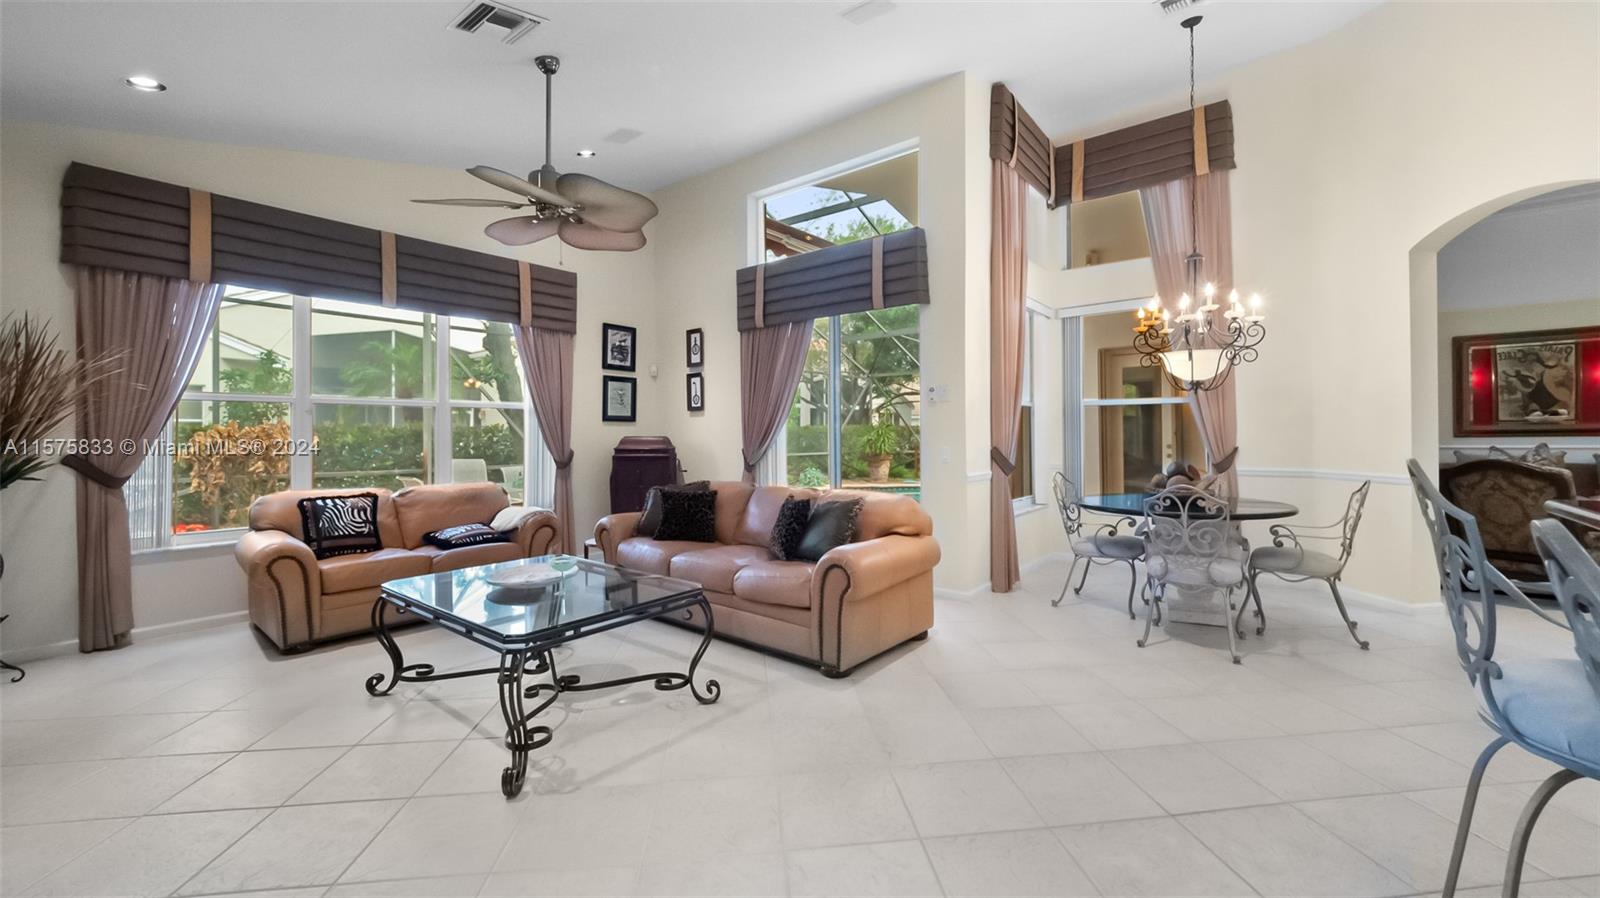 Property for Sale at 11570 Puerto Blvd Blvd, Boynton Beach, Palm Beach County, Florida - Bedrooms: 3 
Bathrooms: 2  - $649,000